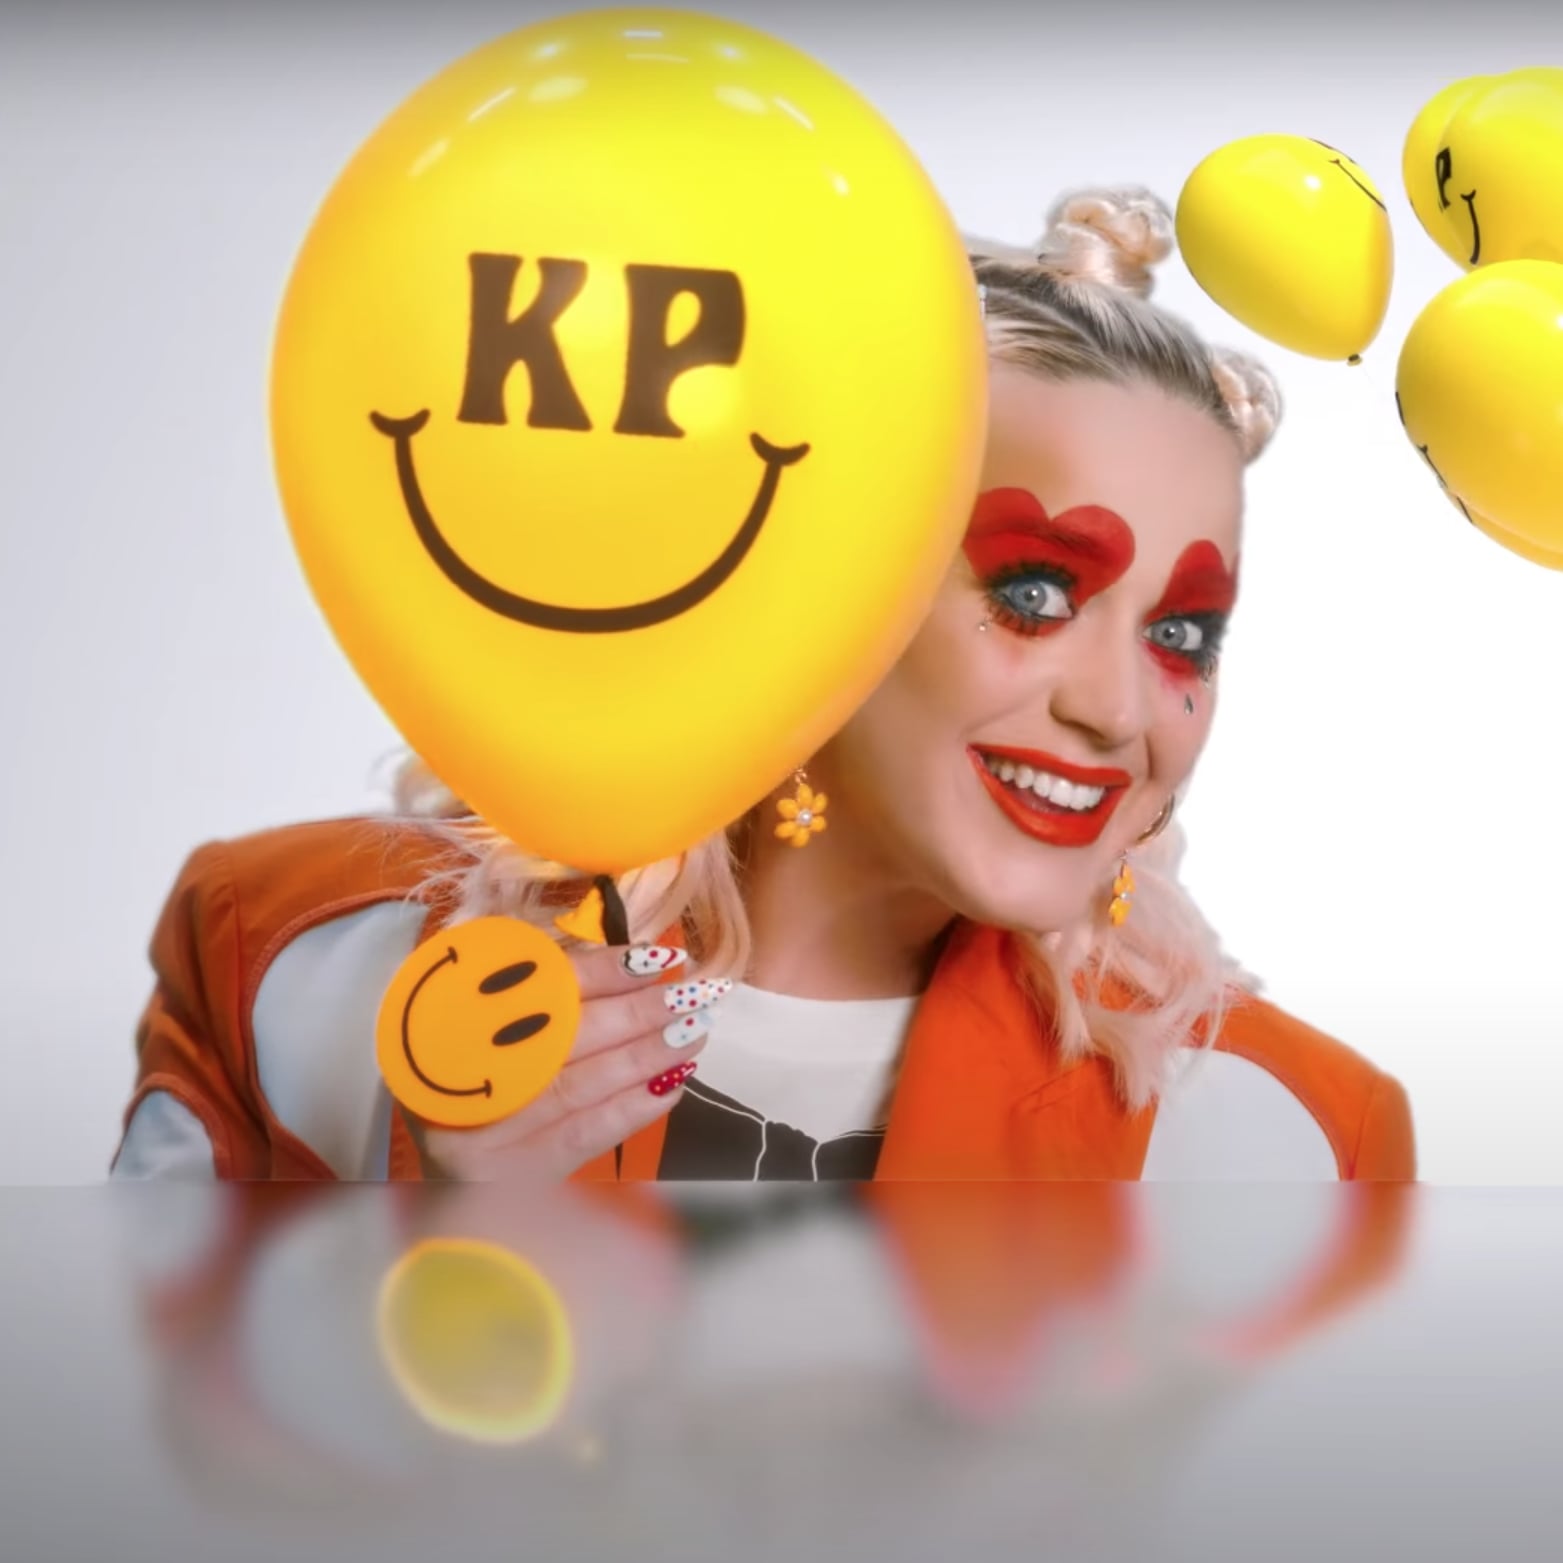 Revelados detalhes do clipe de "Smille" da Katy Perry